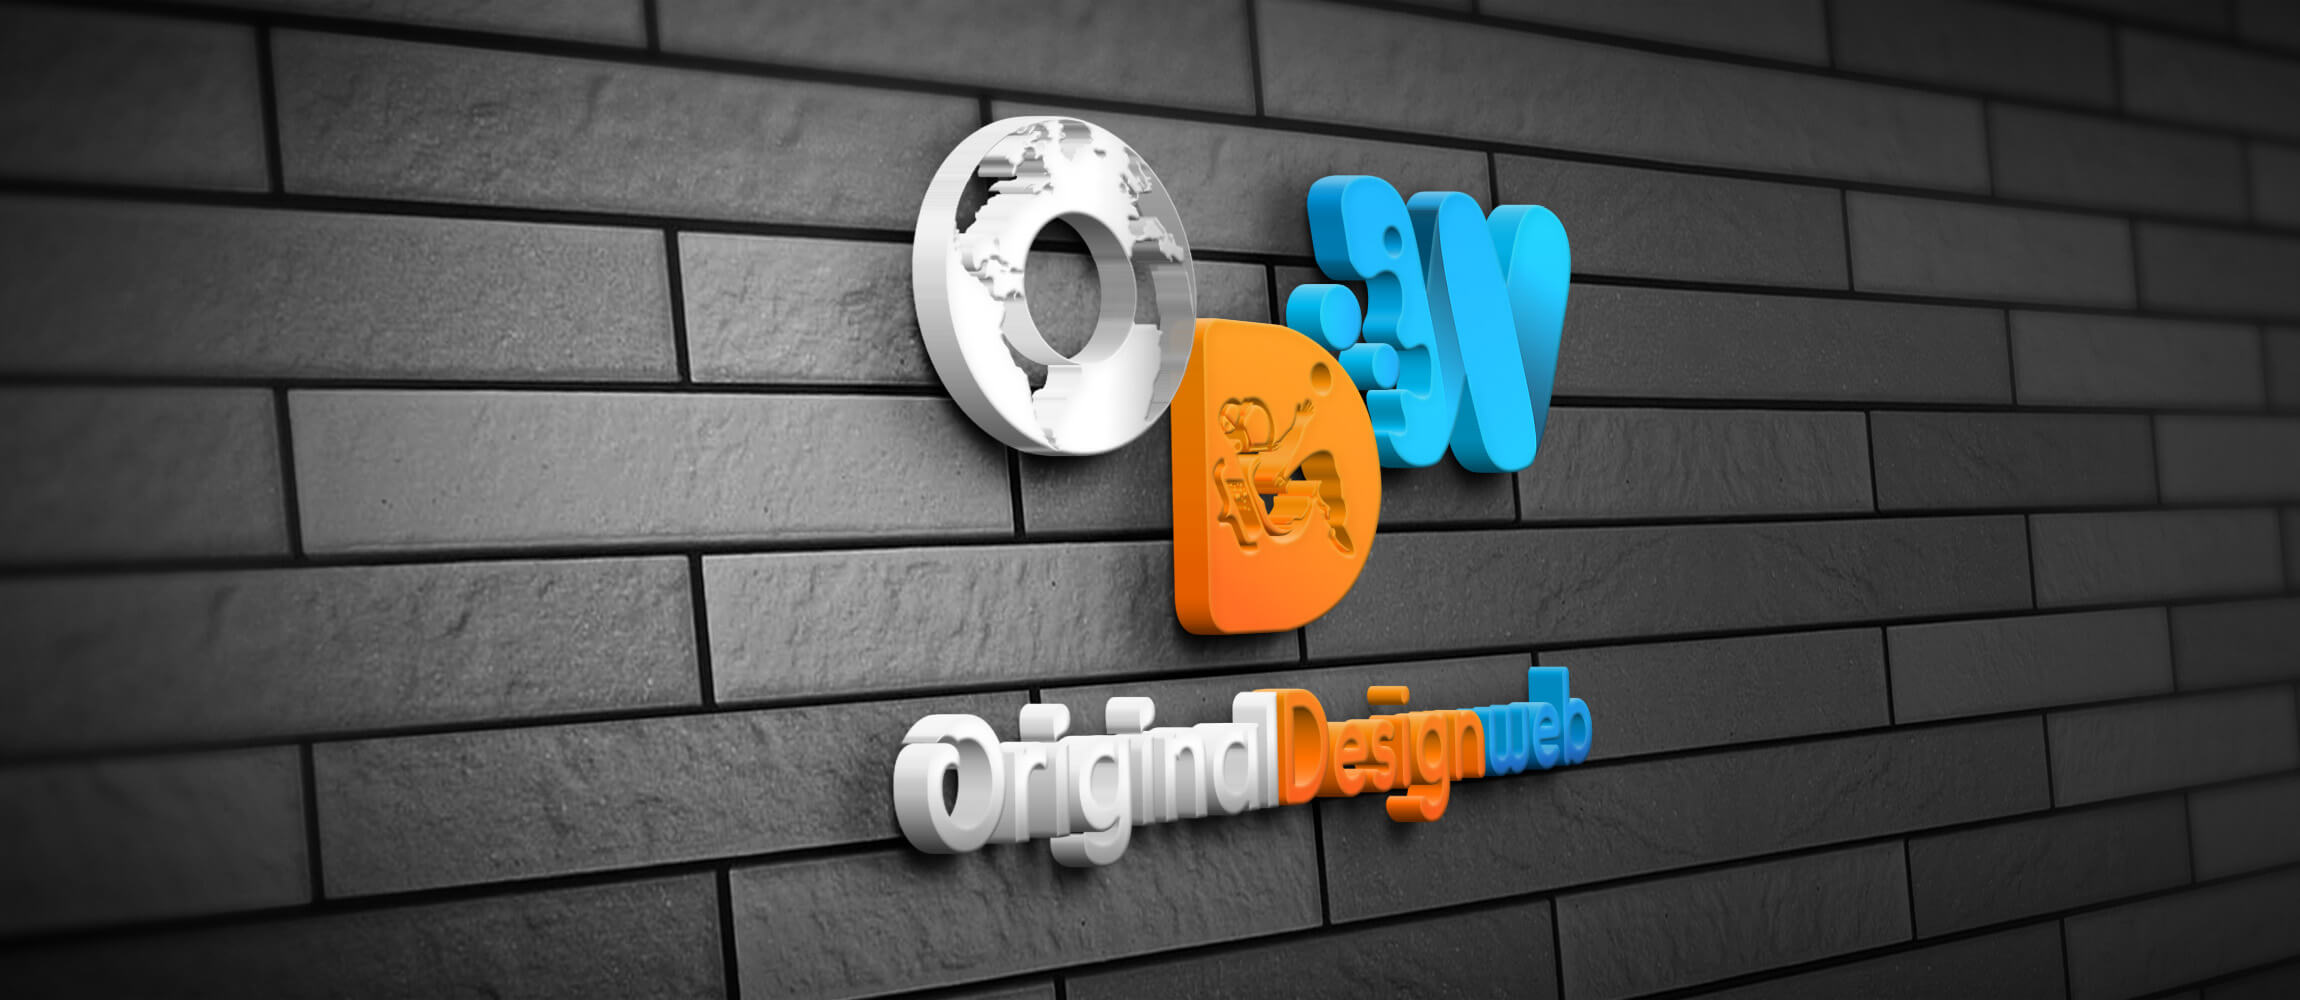 Logo de Original Design Web